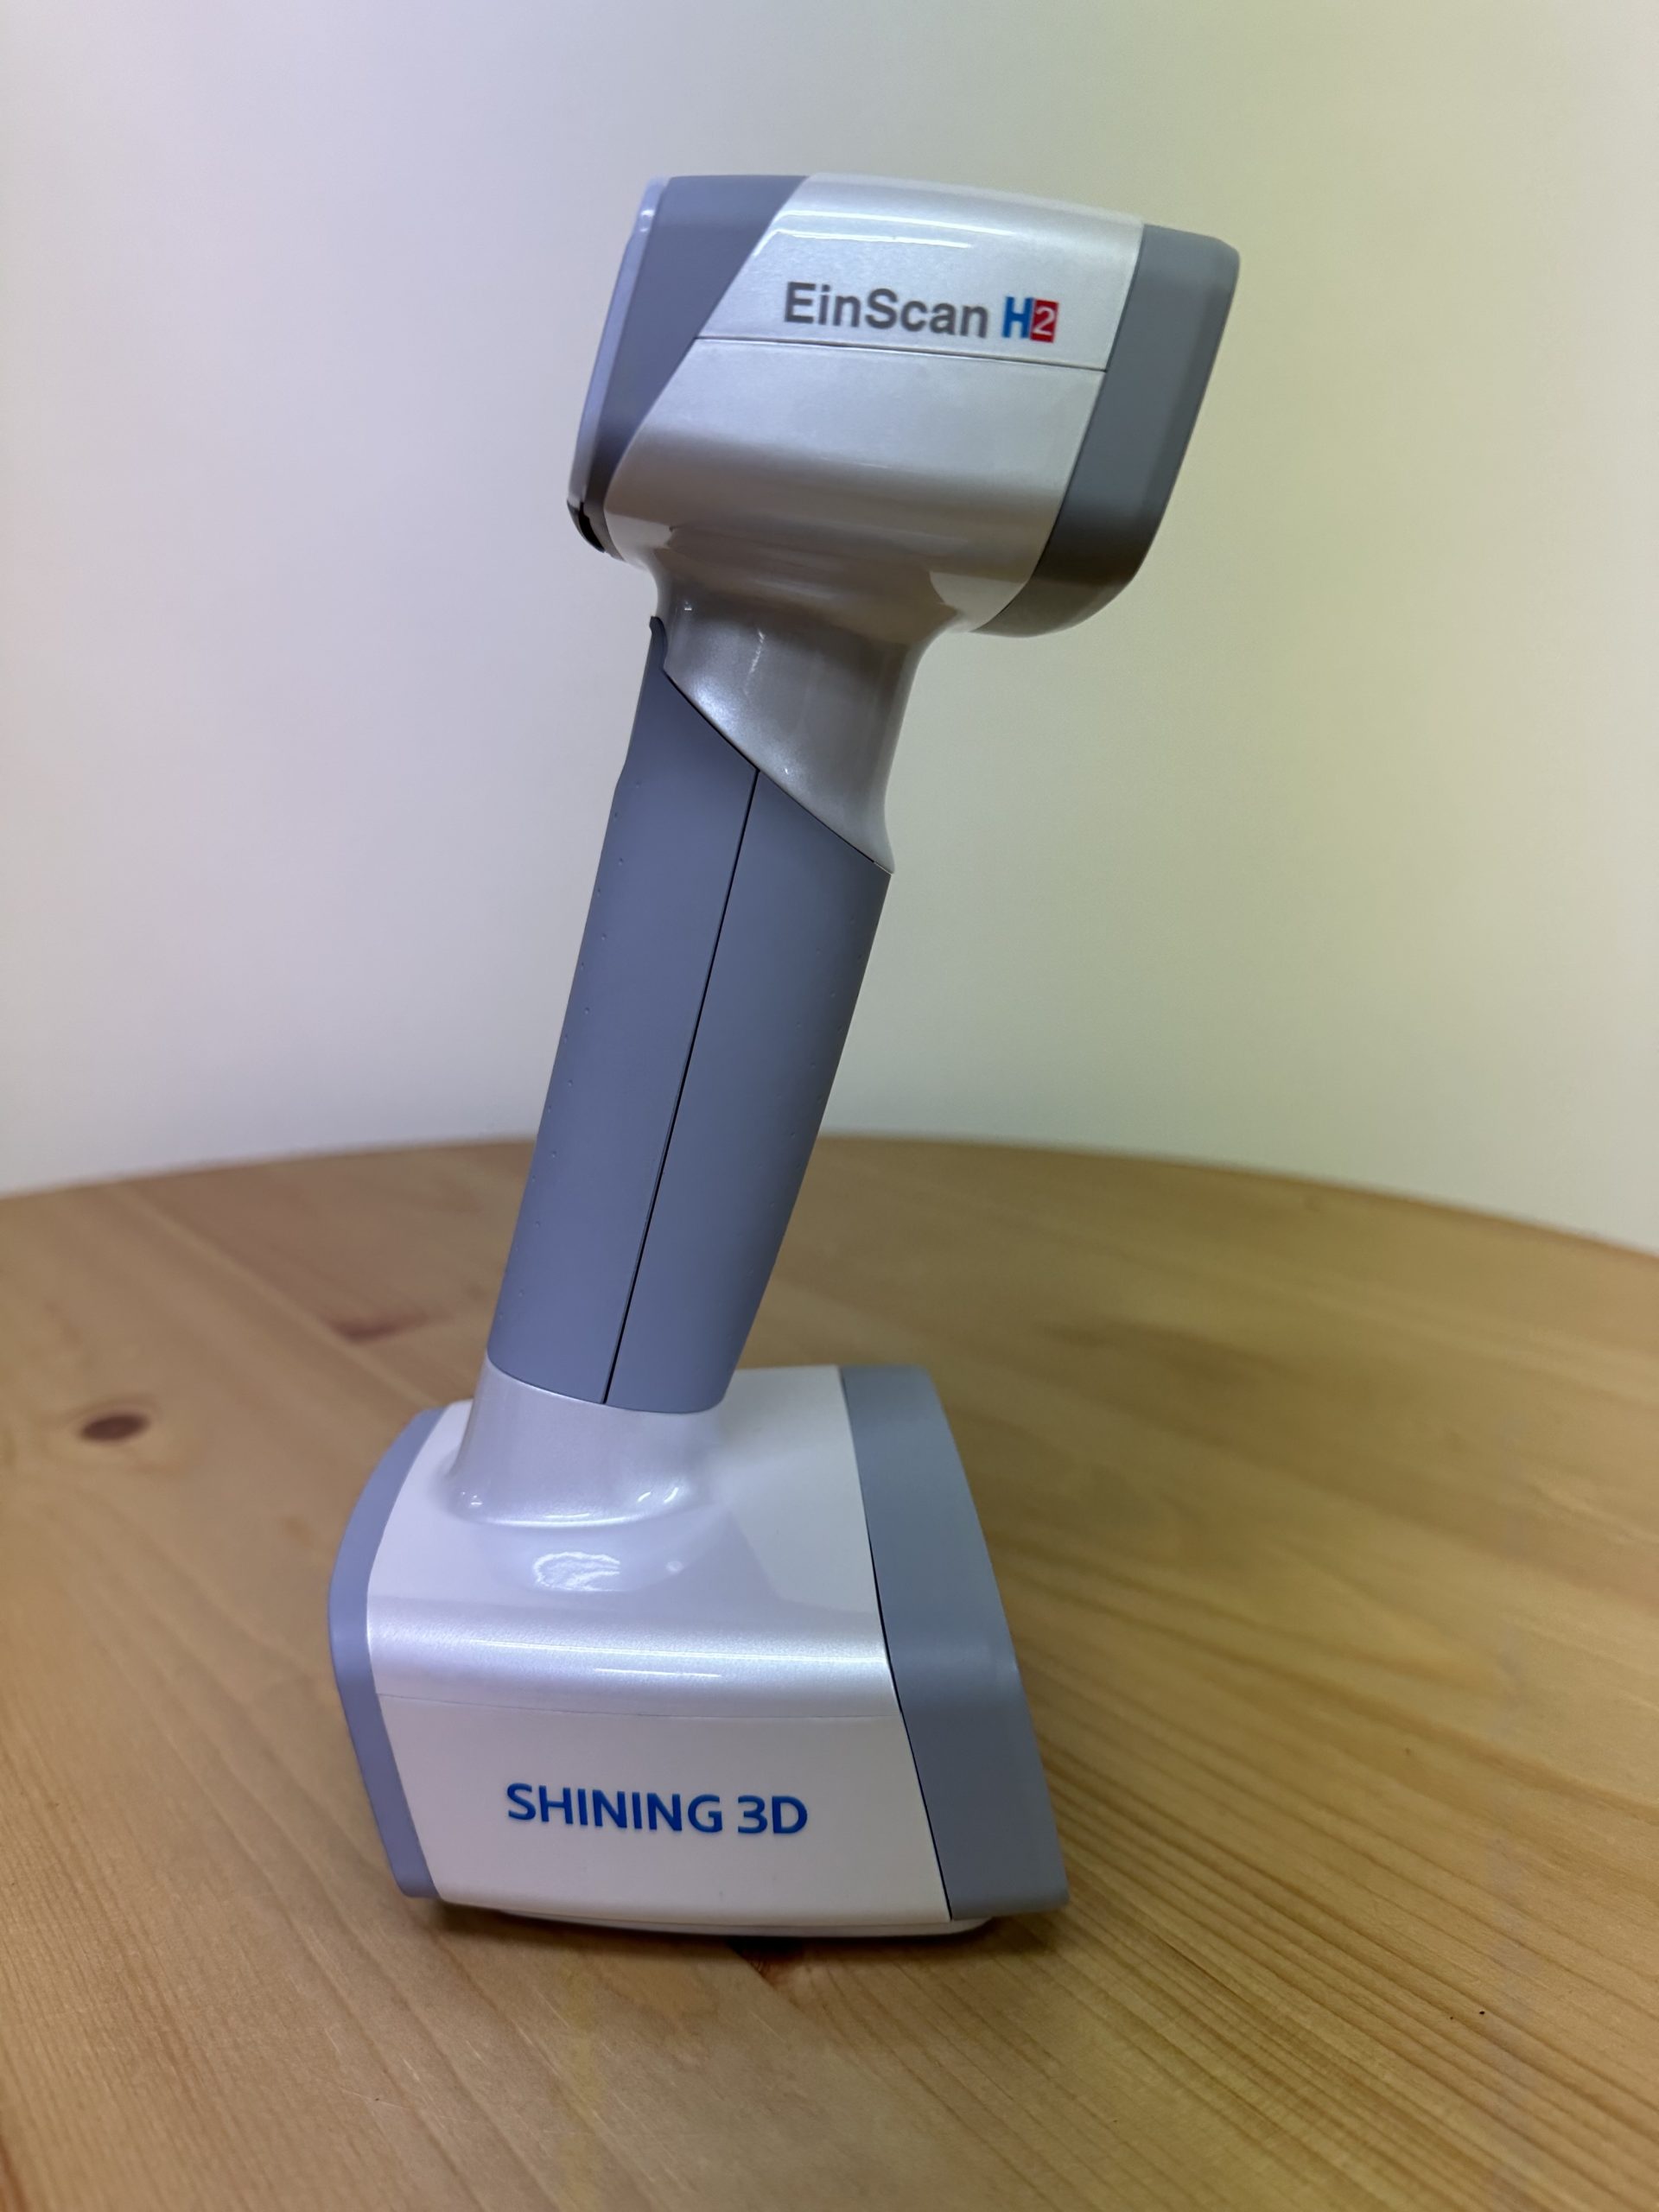 샤이닝3D 아인스캔H2 3D스캐너 Shining3D EinScan H2 3D Scanner